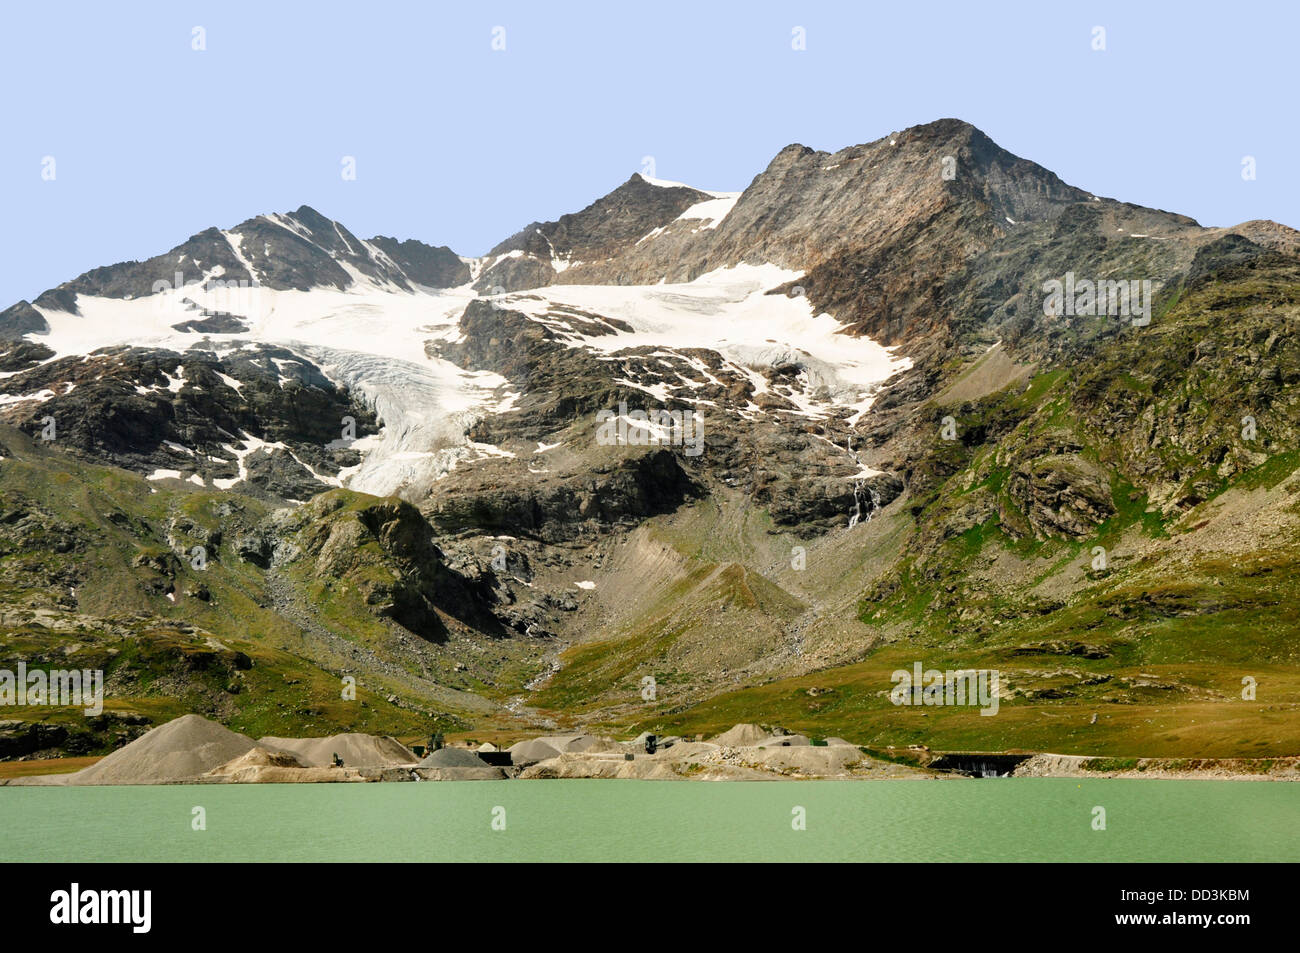 Suisse - train Bernina Express - vue du Lago Biancoand- pics de montagne Piz Palu et le Piz Bernina - soleil d'été Banque D'Images